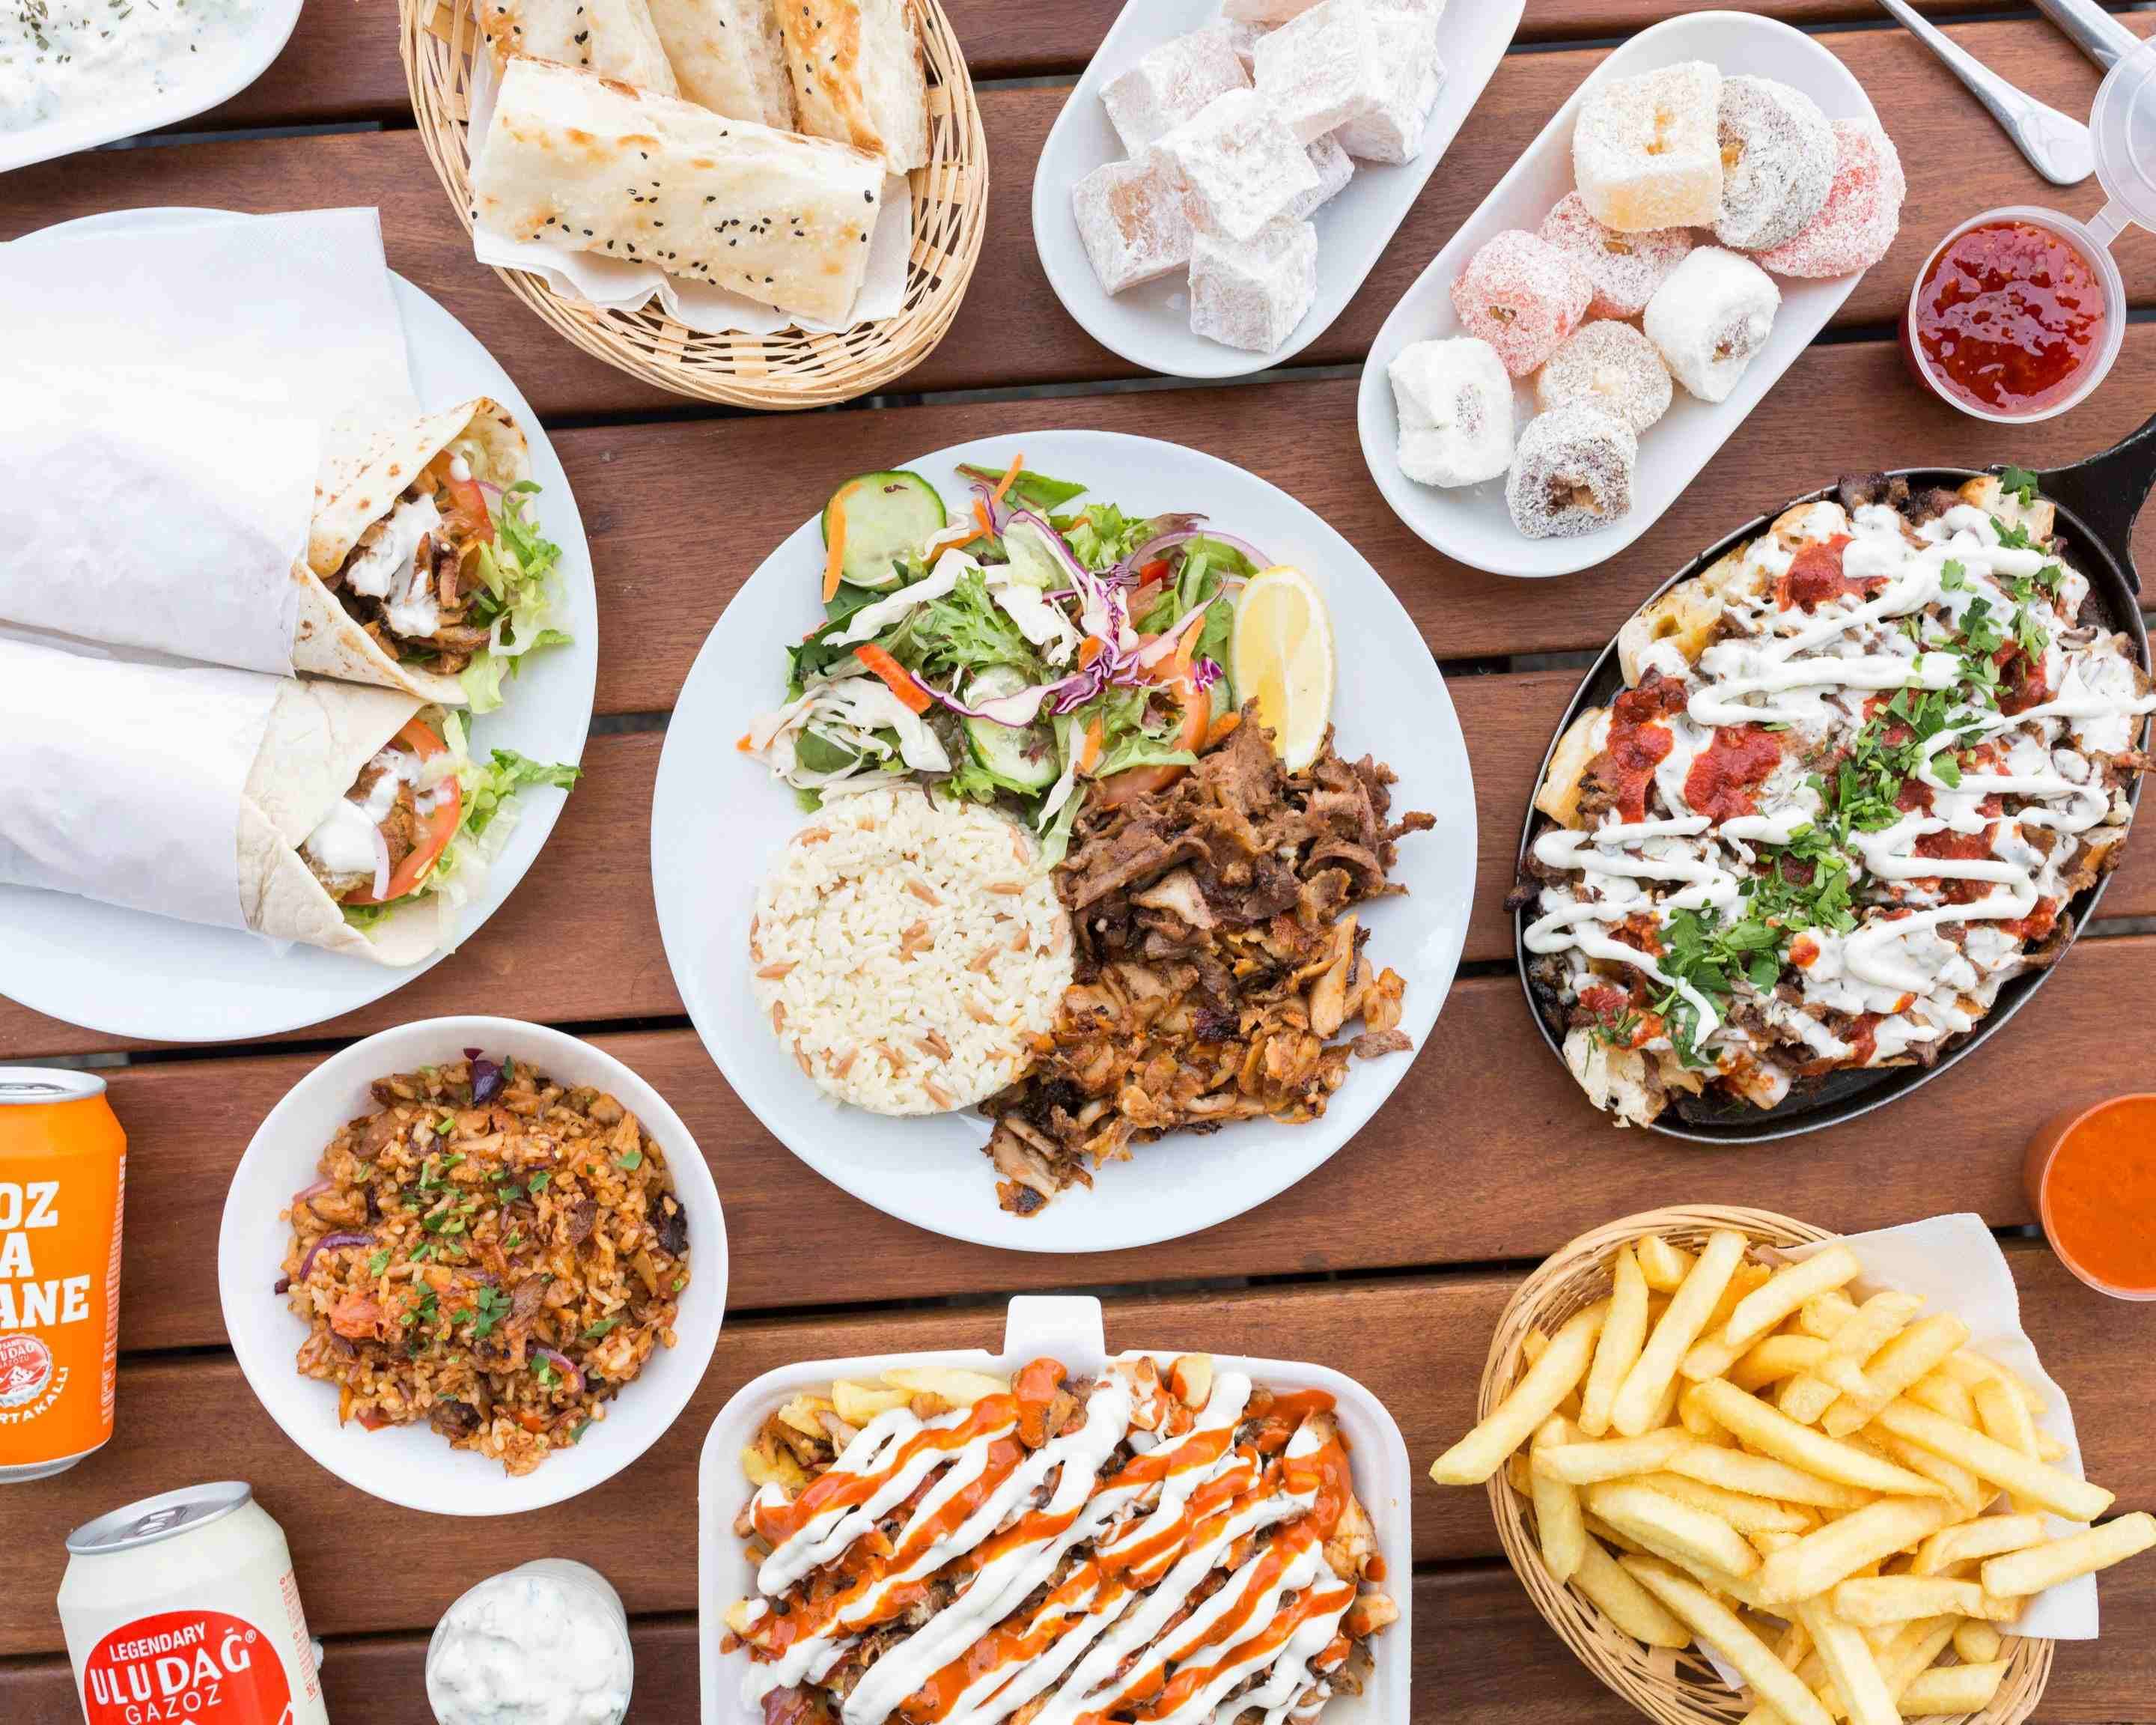 Lions Kebab Menu - Takeaway in London | Delivery menu & prices | Uber Eats